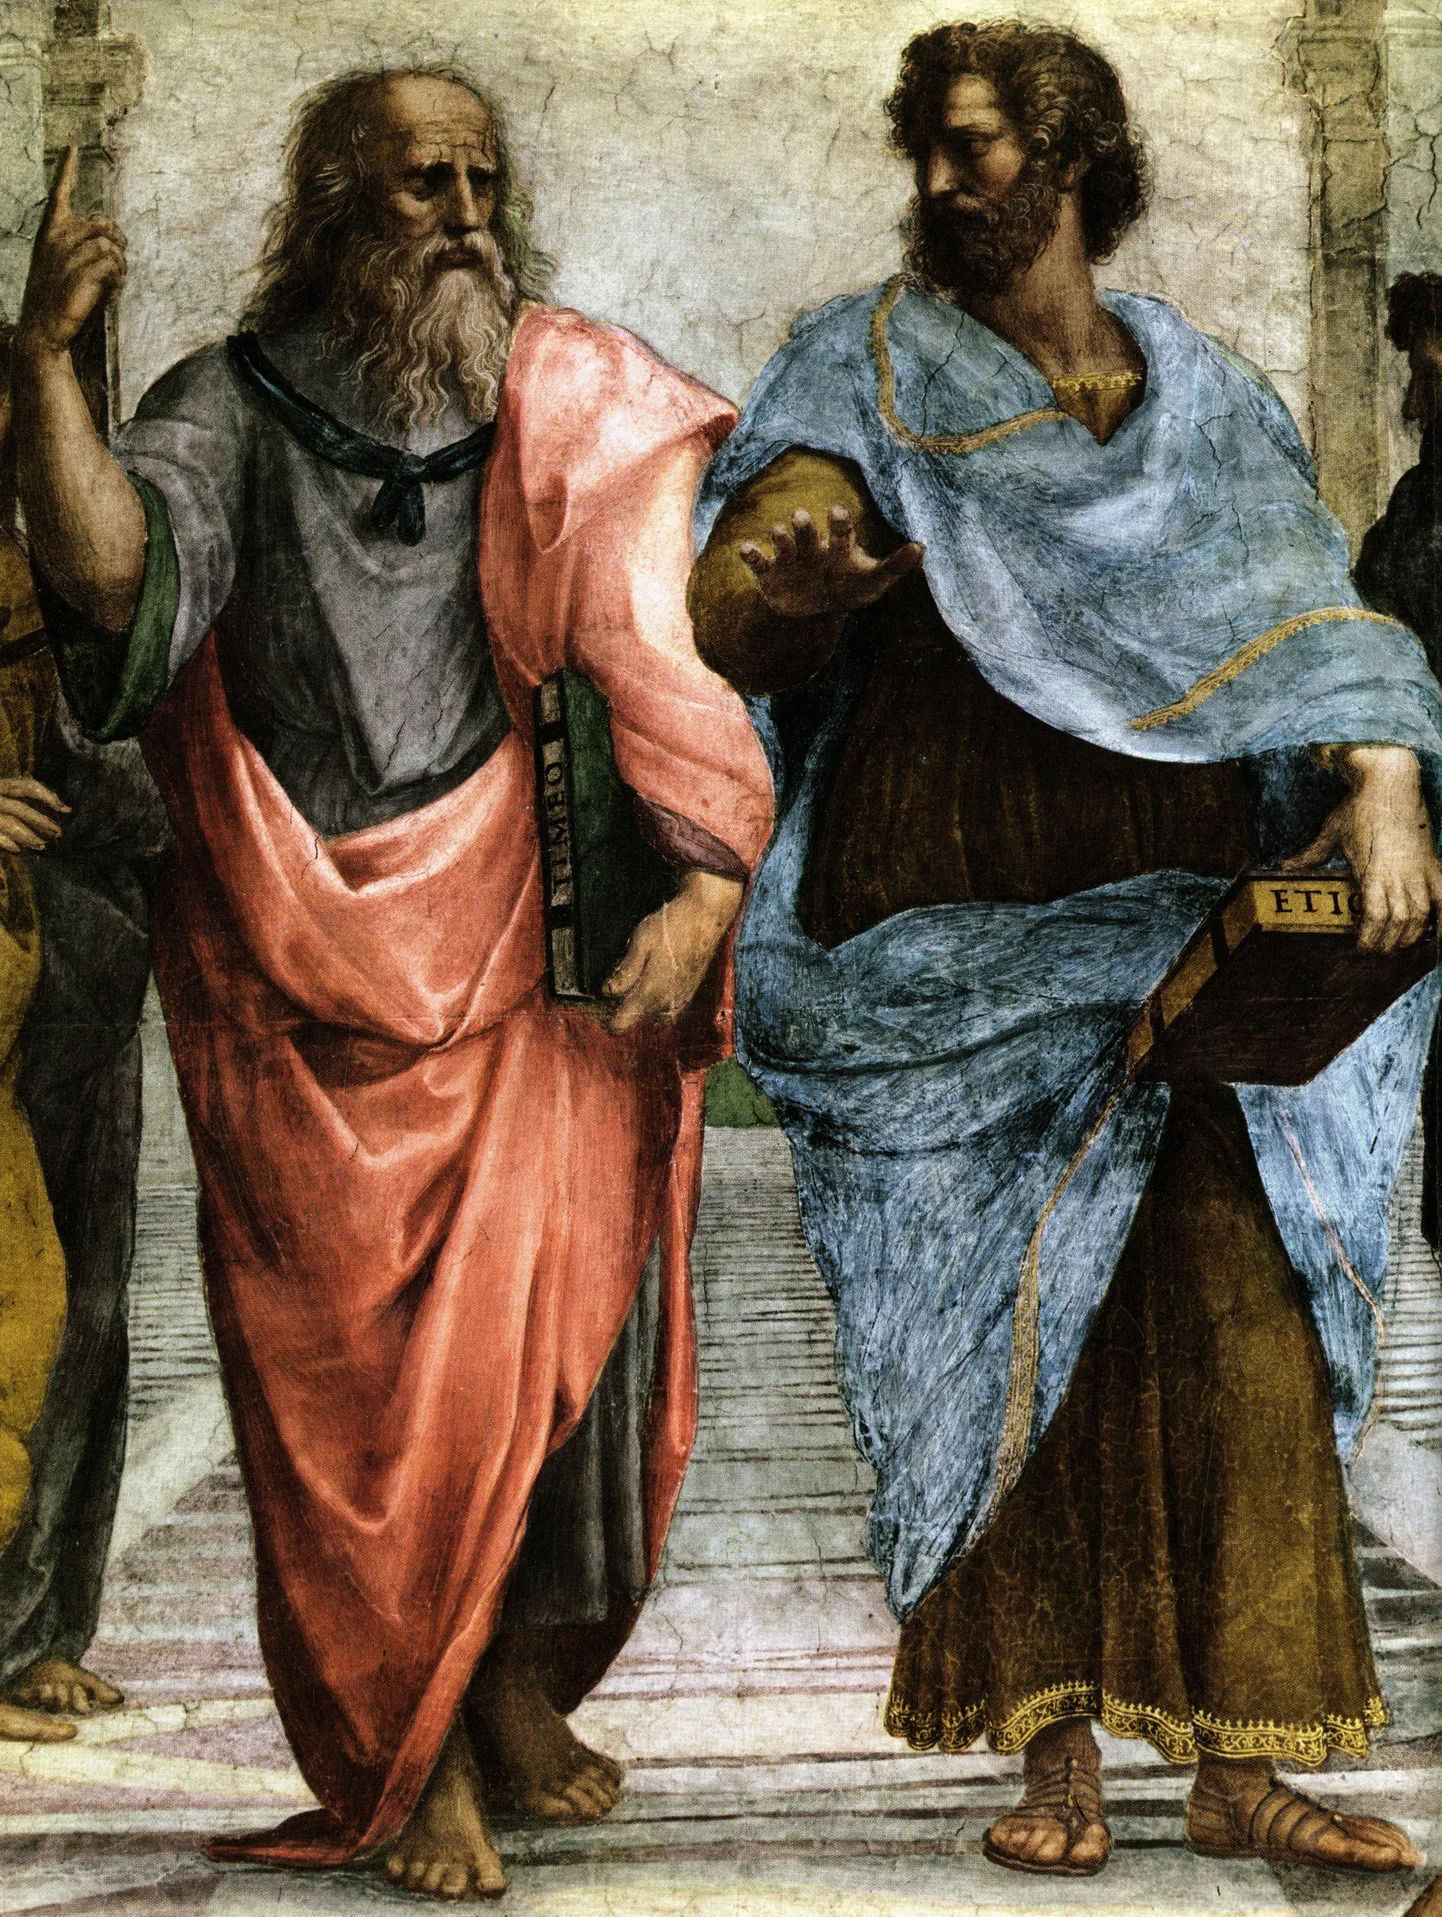 Väljavõte Raffaeli maalist, kus peal Platon ja Aristoteles.